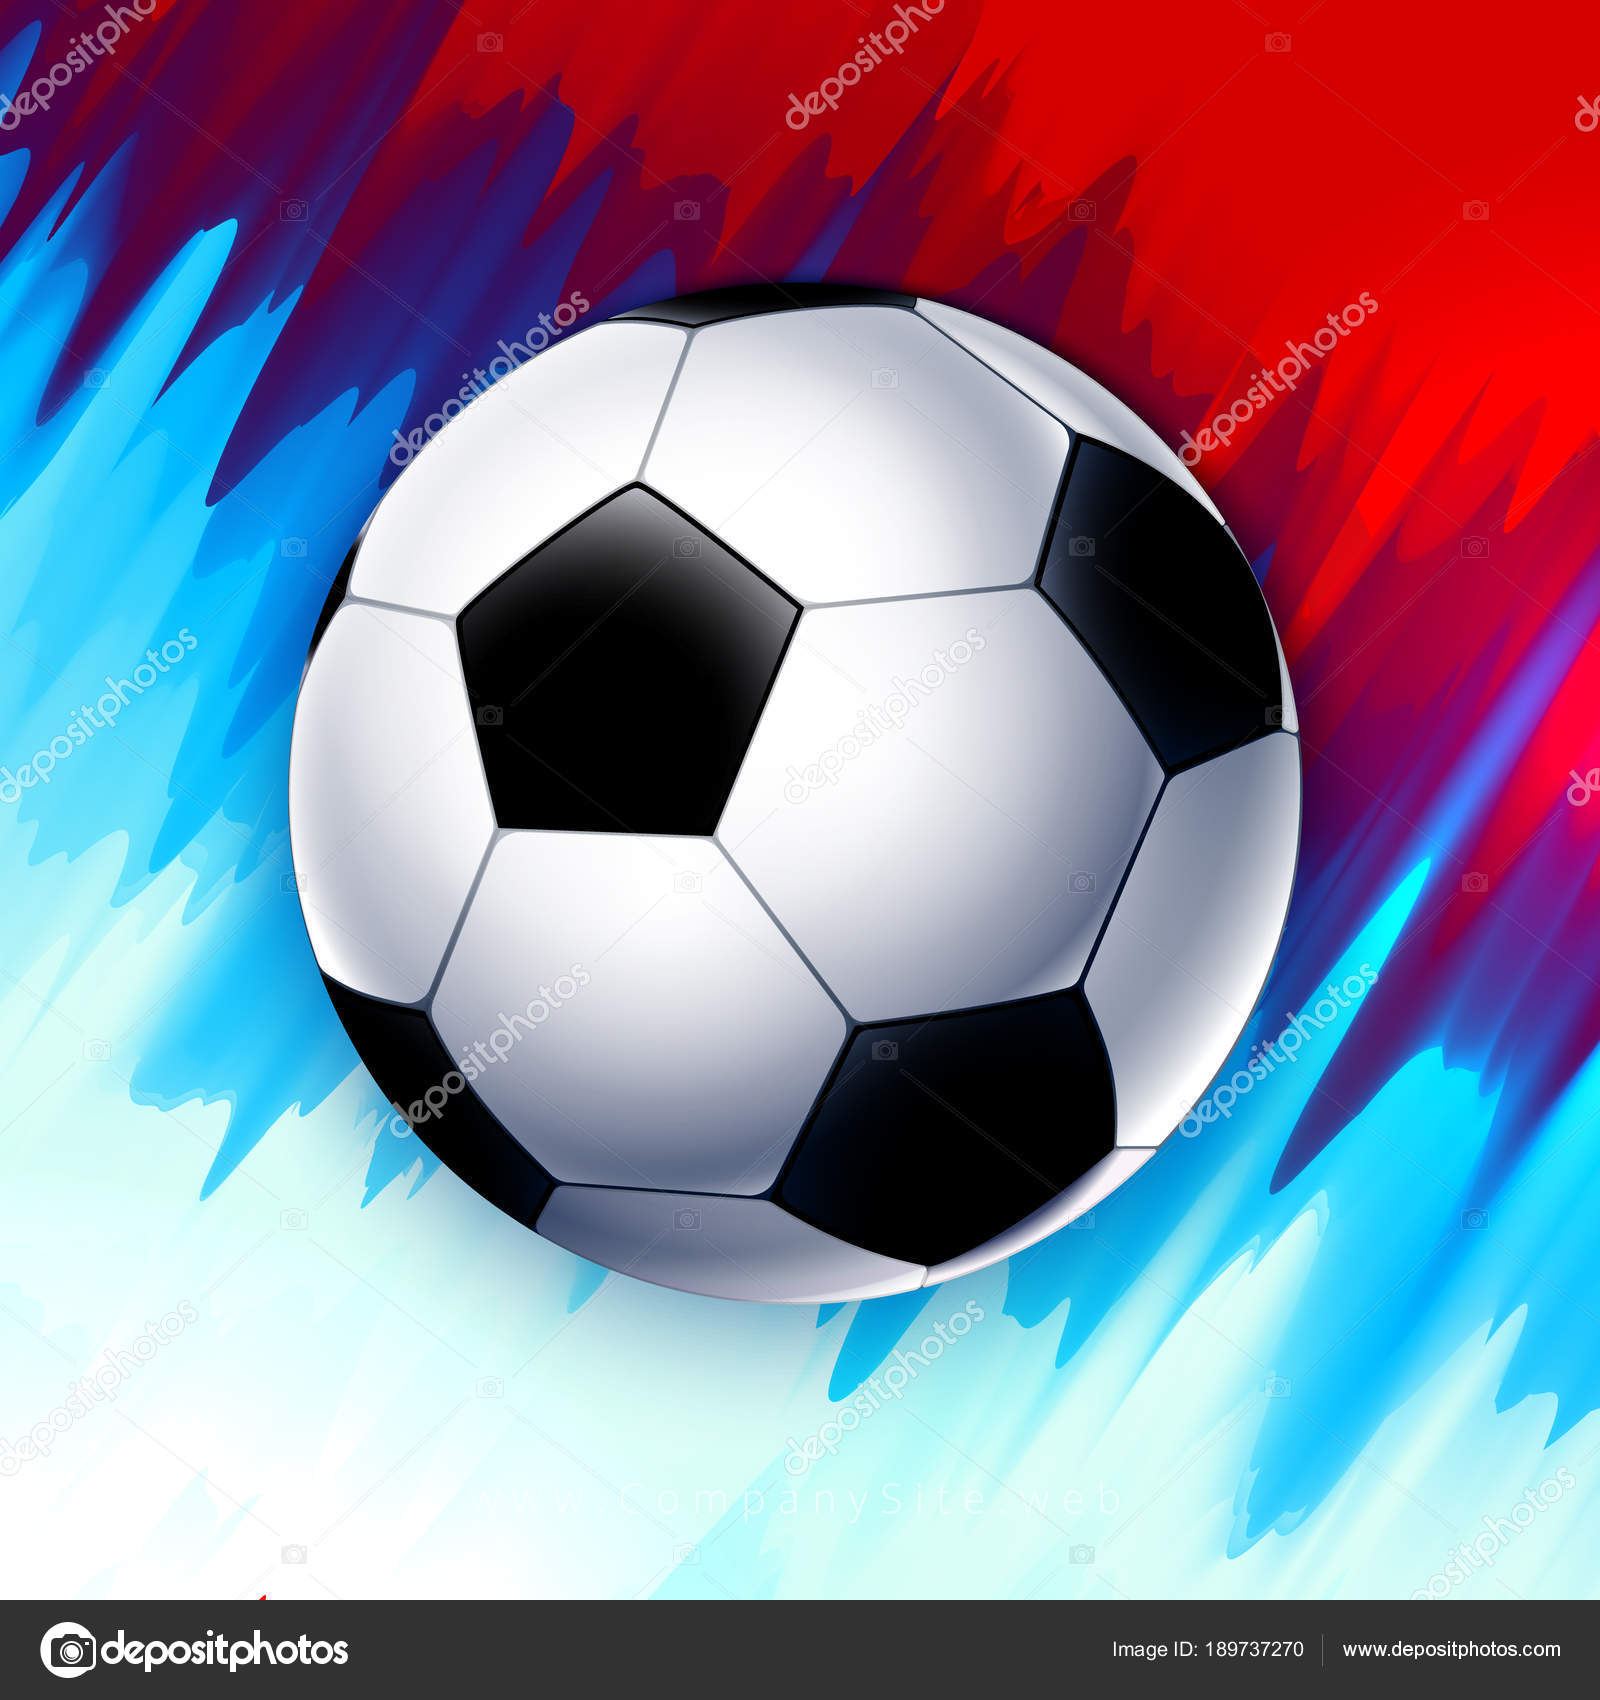 futebol wallpaper,soccer ball,football,ball,soccer,sports equipment